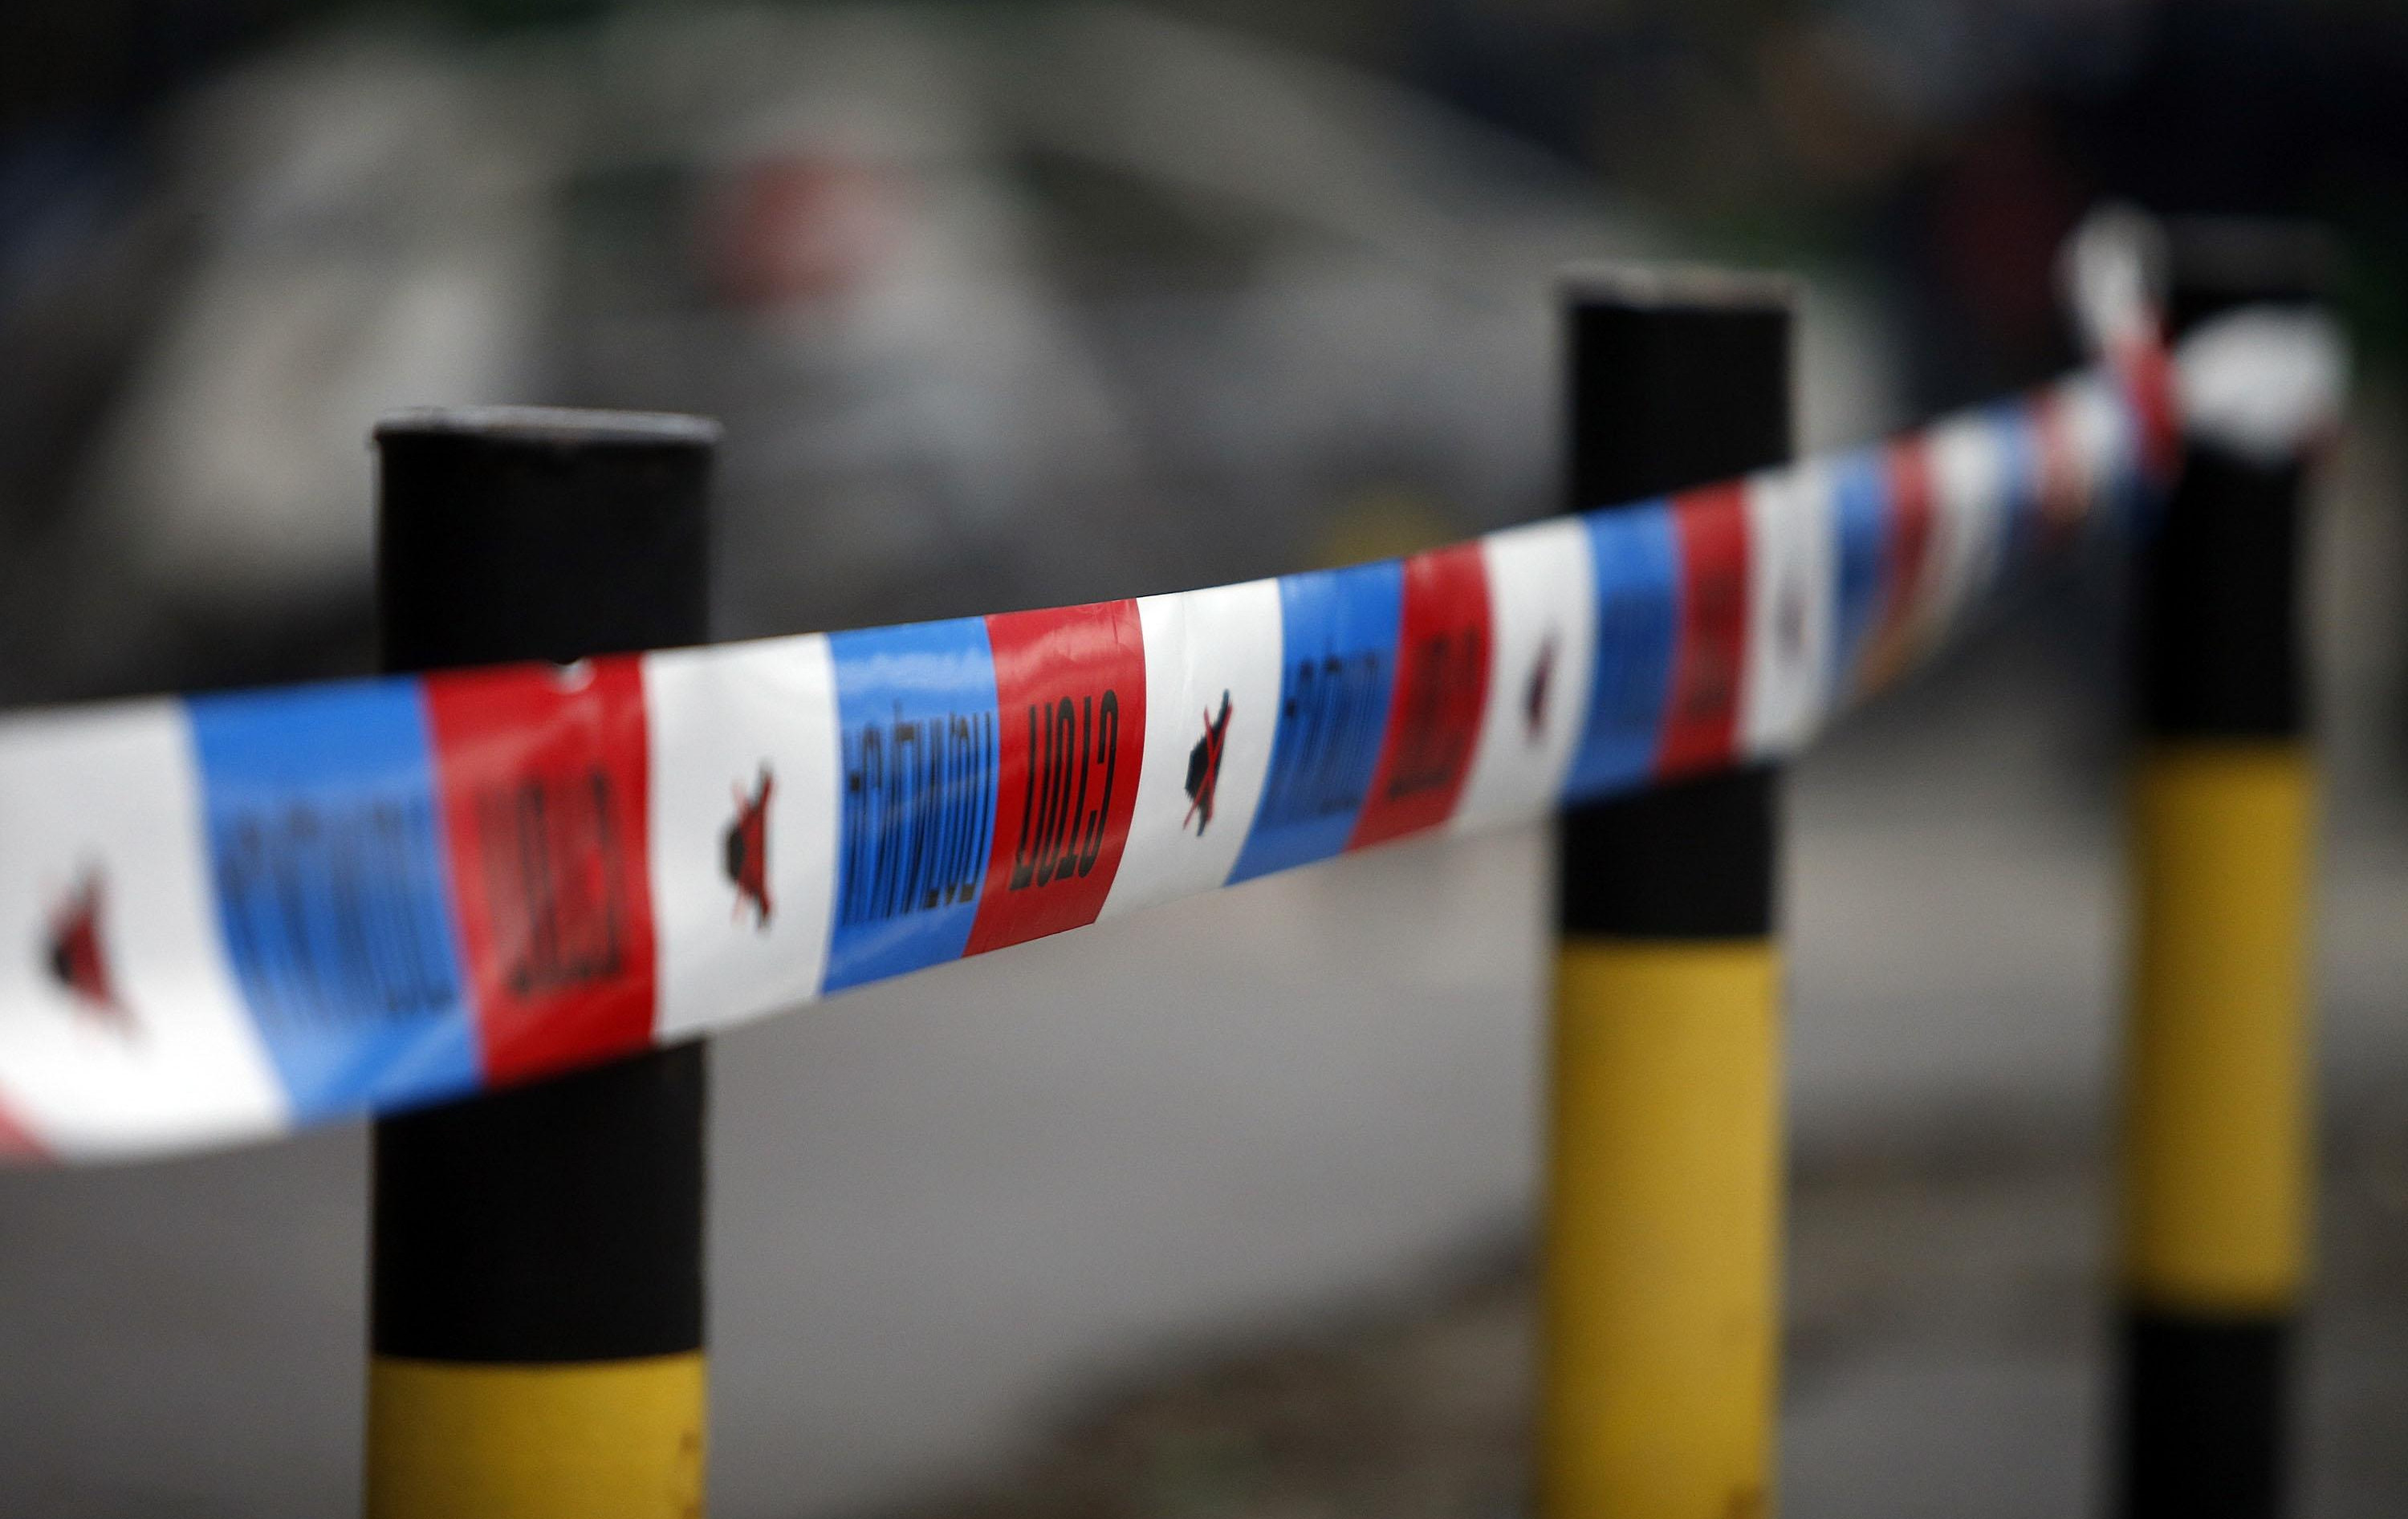 PORED POLICIJSKE STANICE IZGOREO AUTOMOBIL: Incident u Novom Sadu